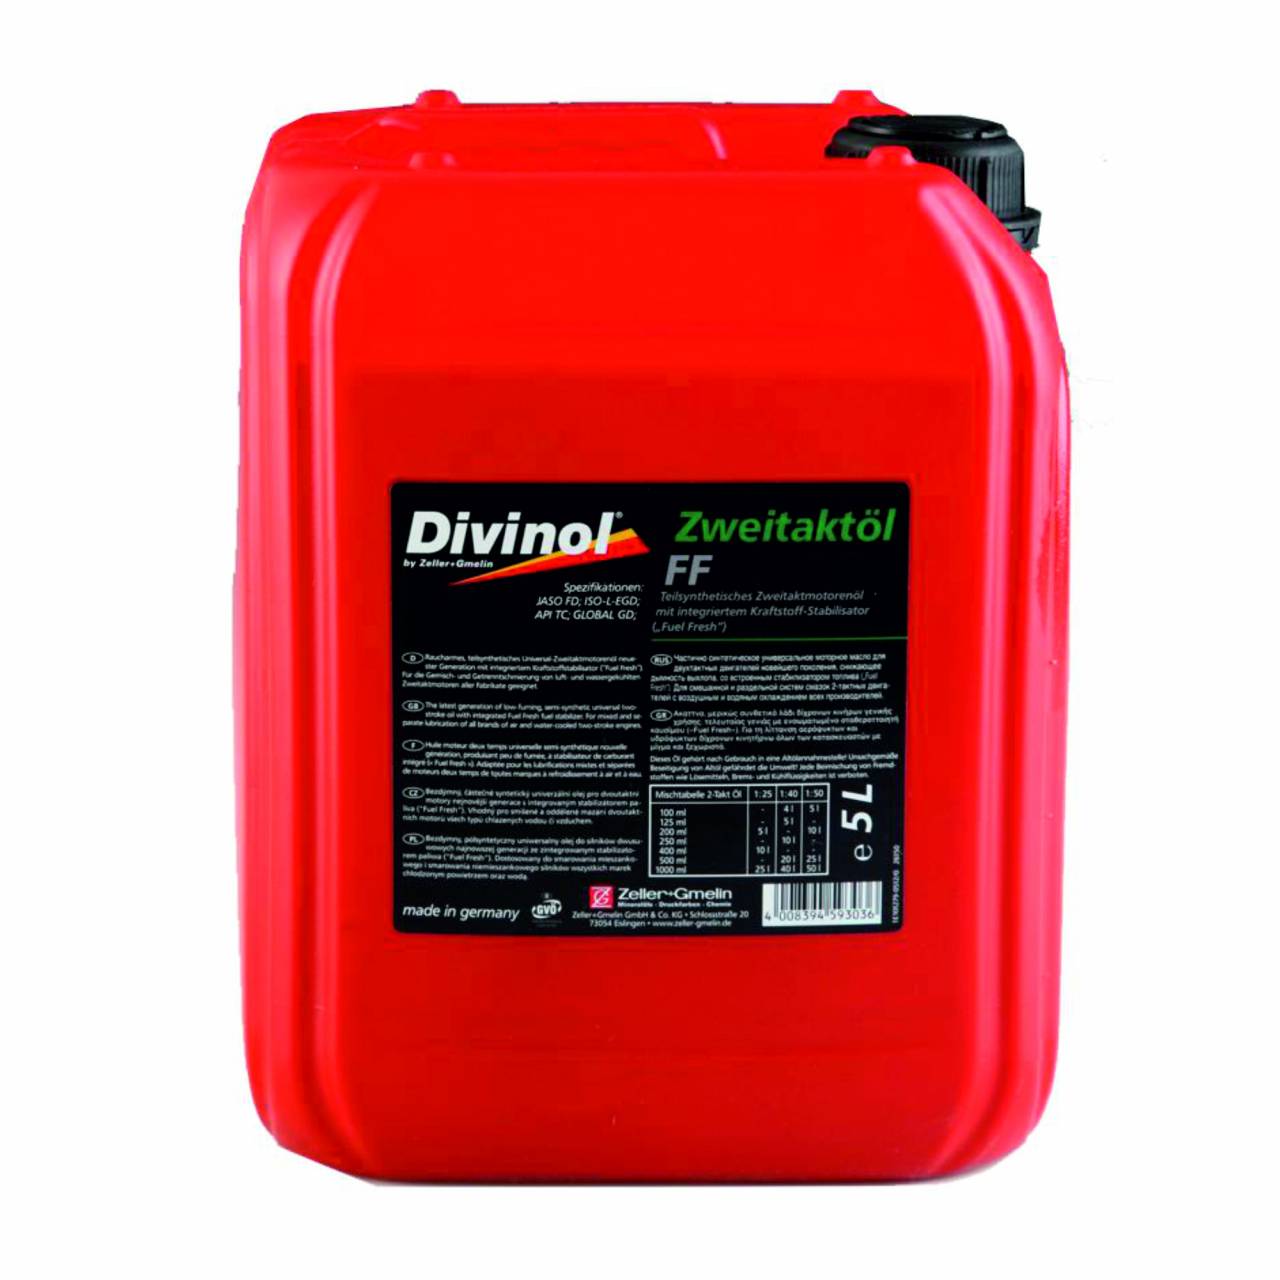 DIVINOL 2-Takt-Öl Fuel-Fresh 100 ml in Dosierflasche